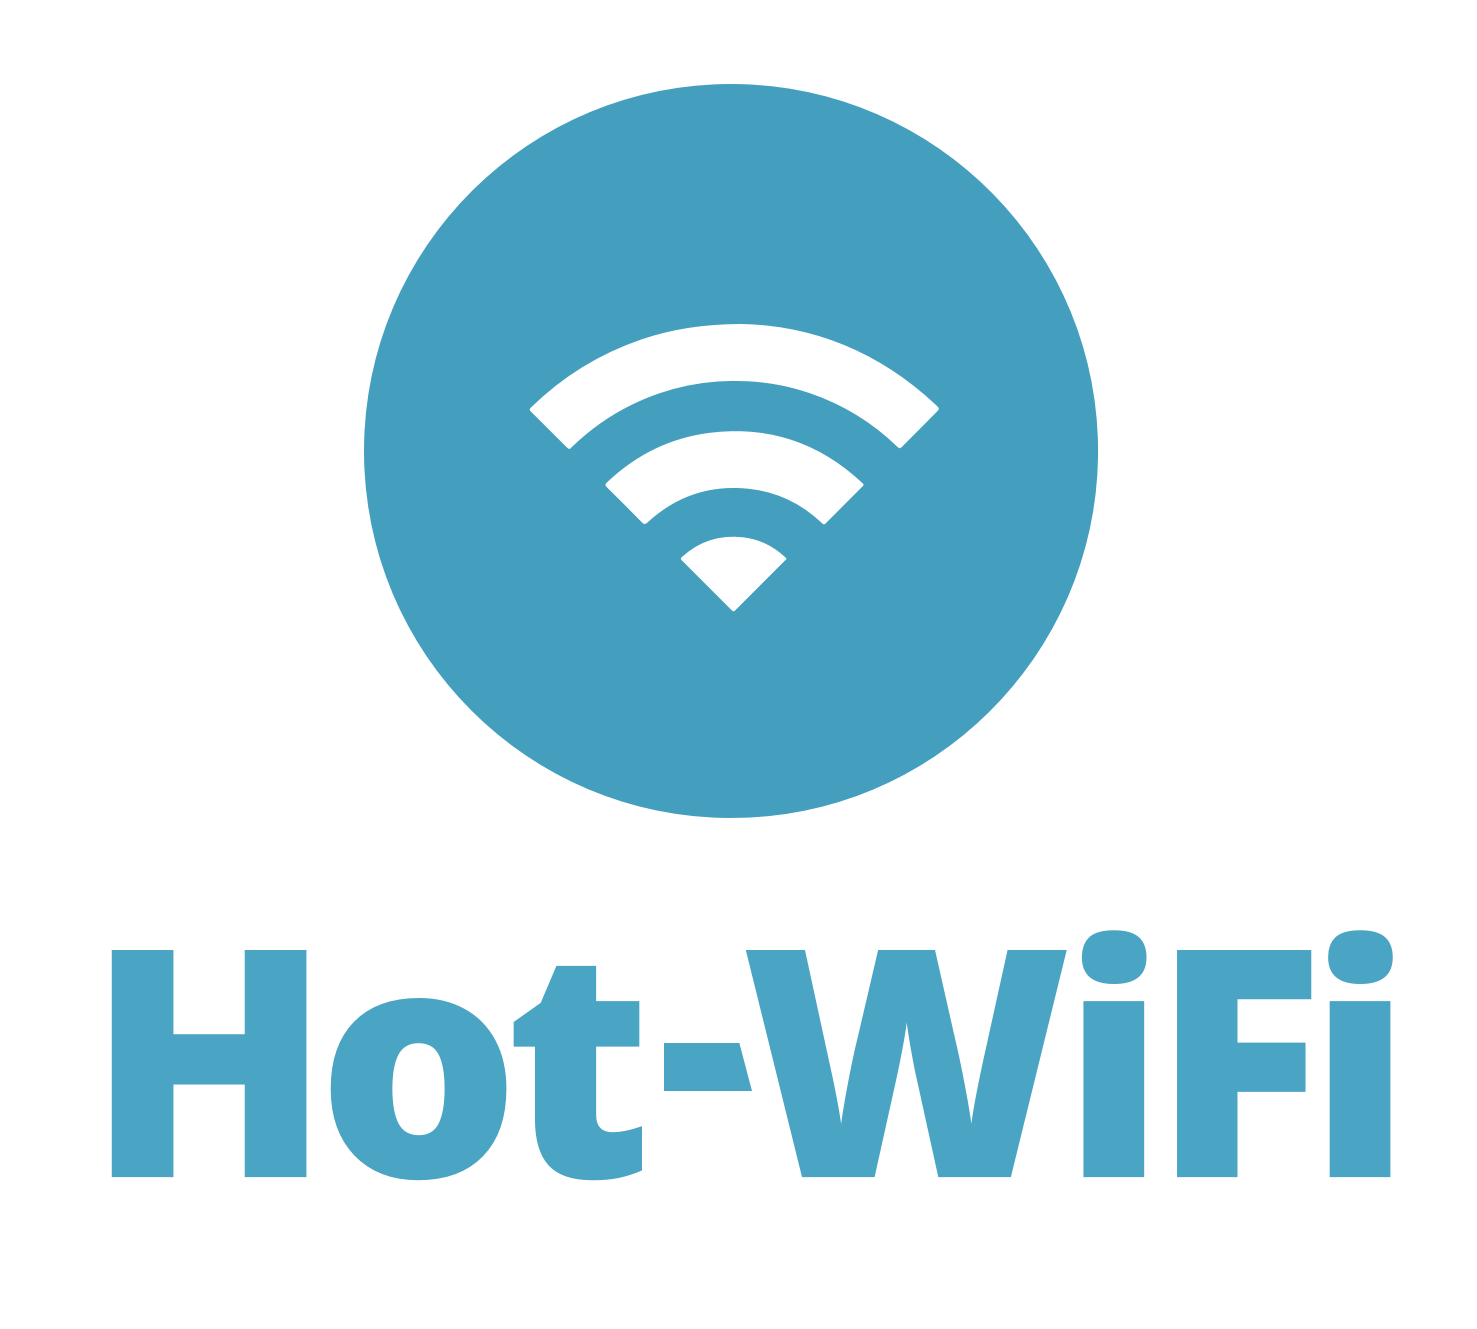 HOT-Wi-Fi